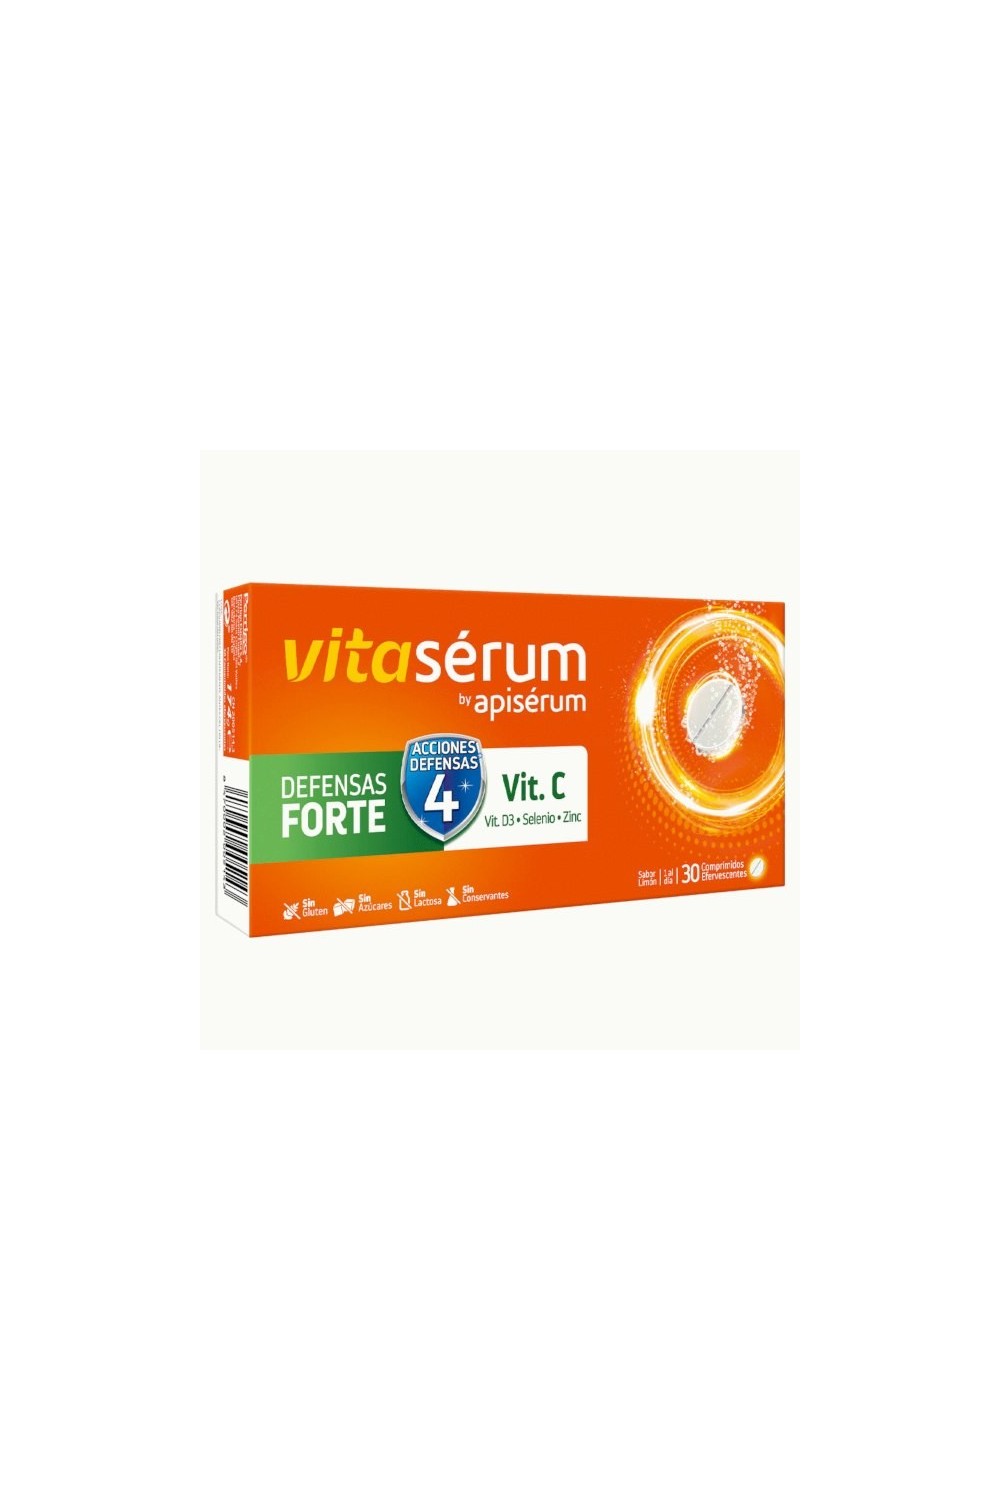 Vitaserum By Apiserum Defensas Forte Vit C 30 Tablets